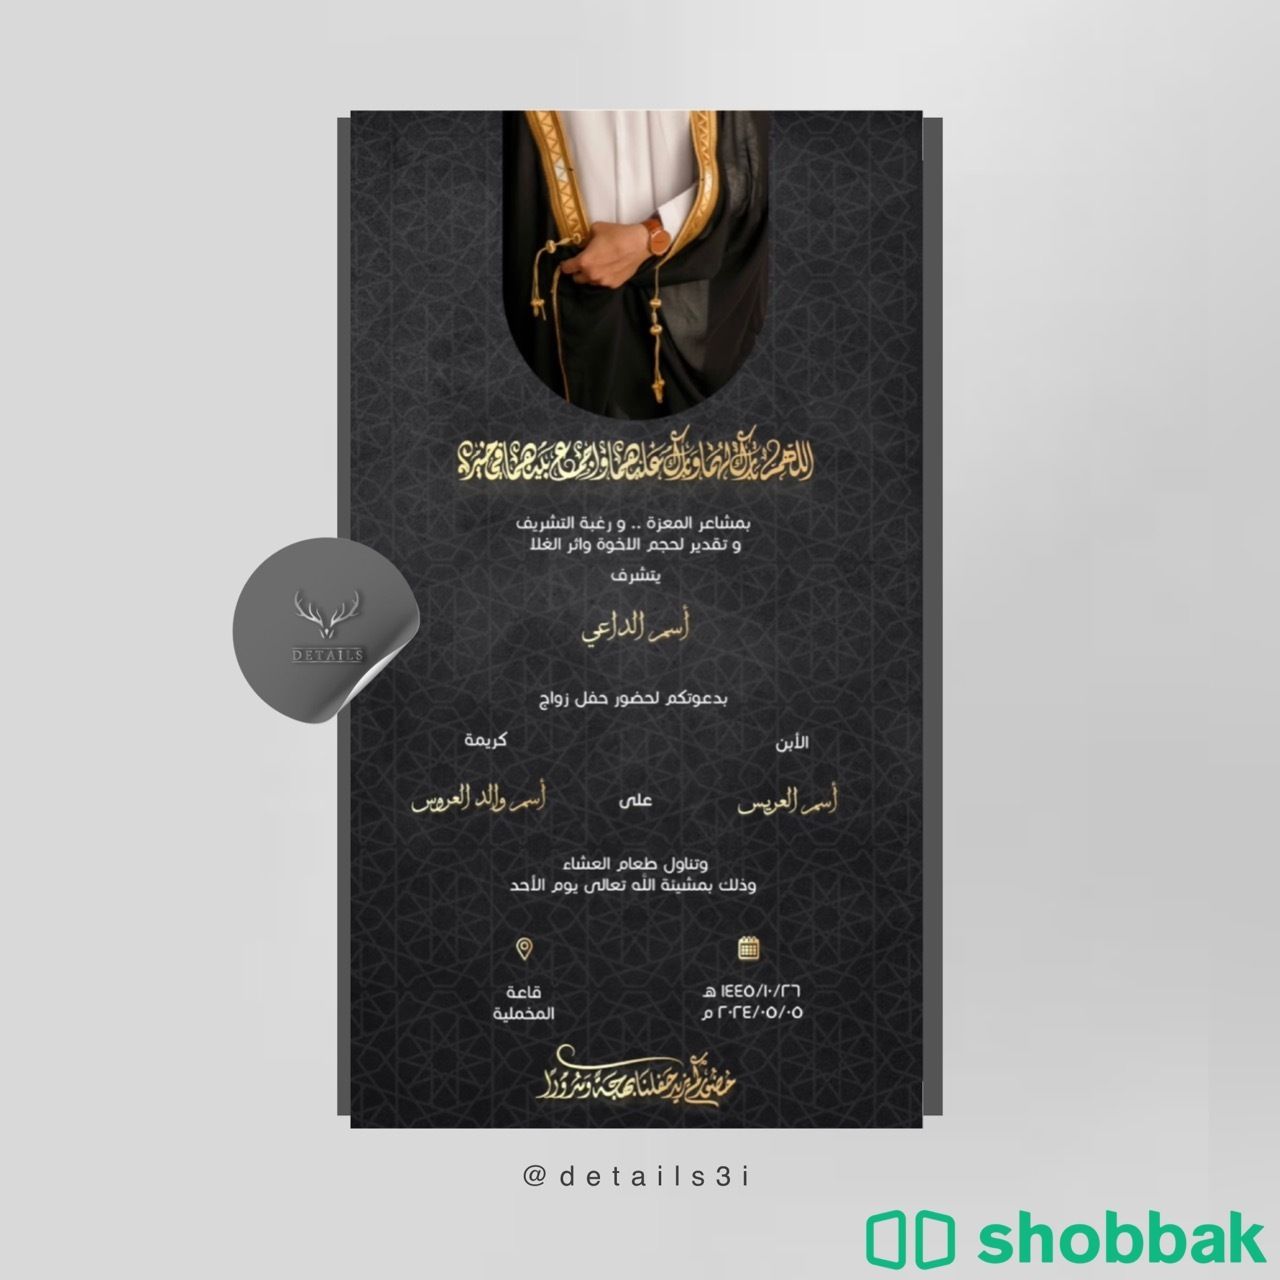 دعوة زواج رجالية Shobbak Saudi Arabia